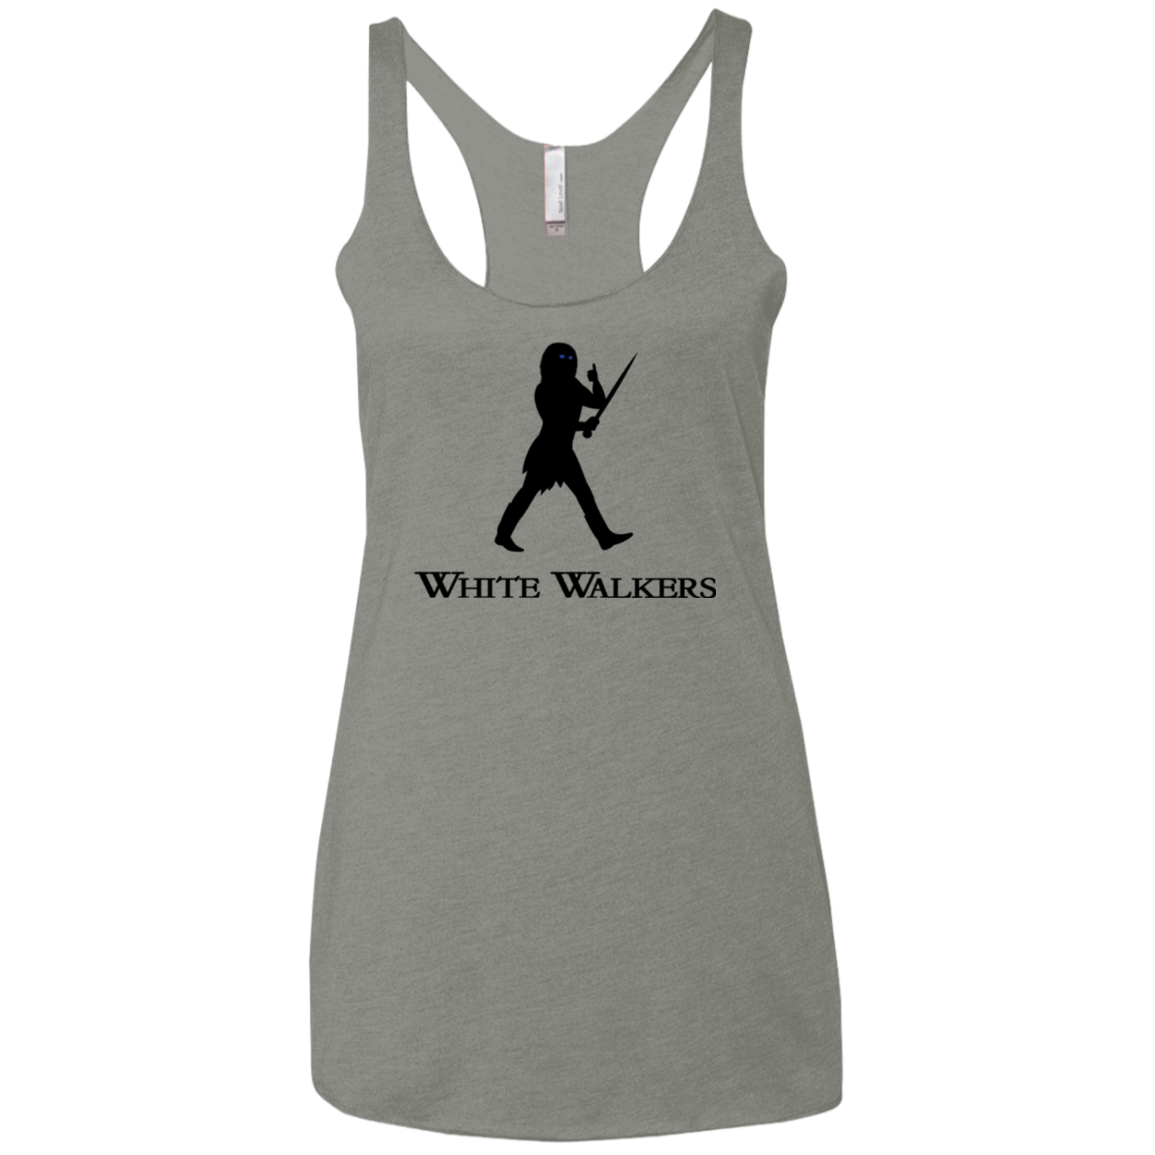 White walkers Women's Triblend Racerback Tank